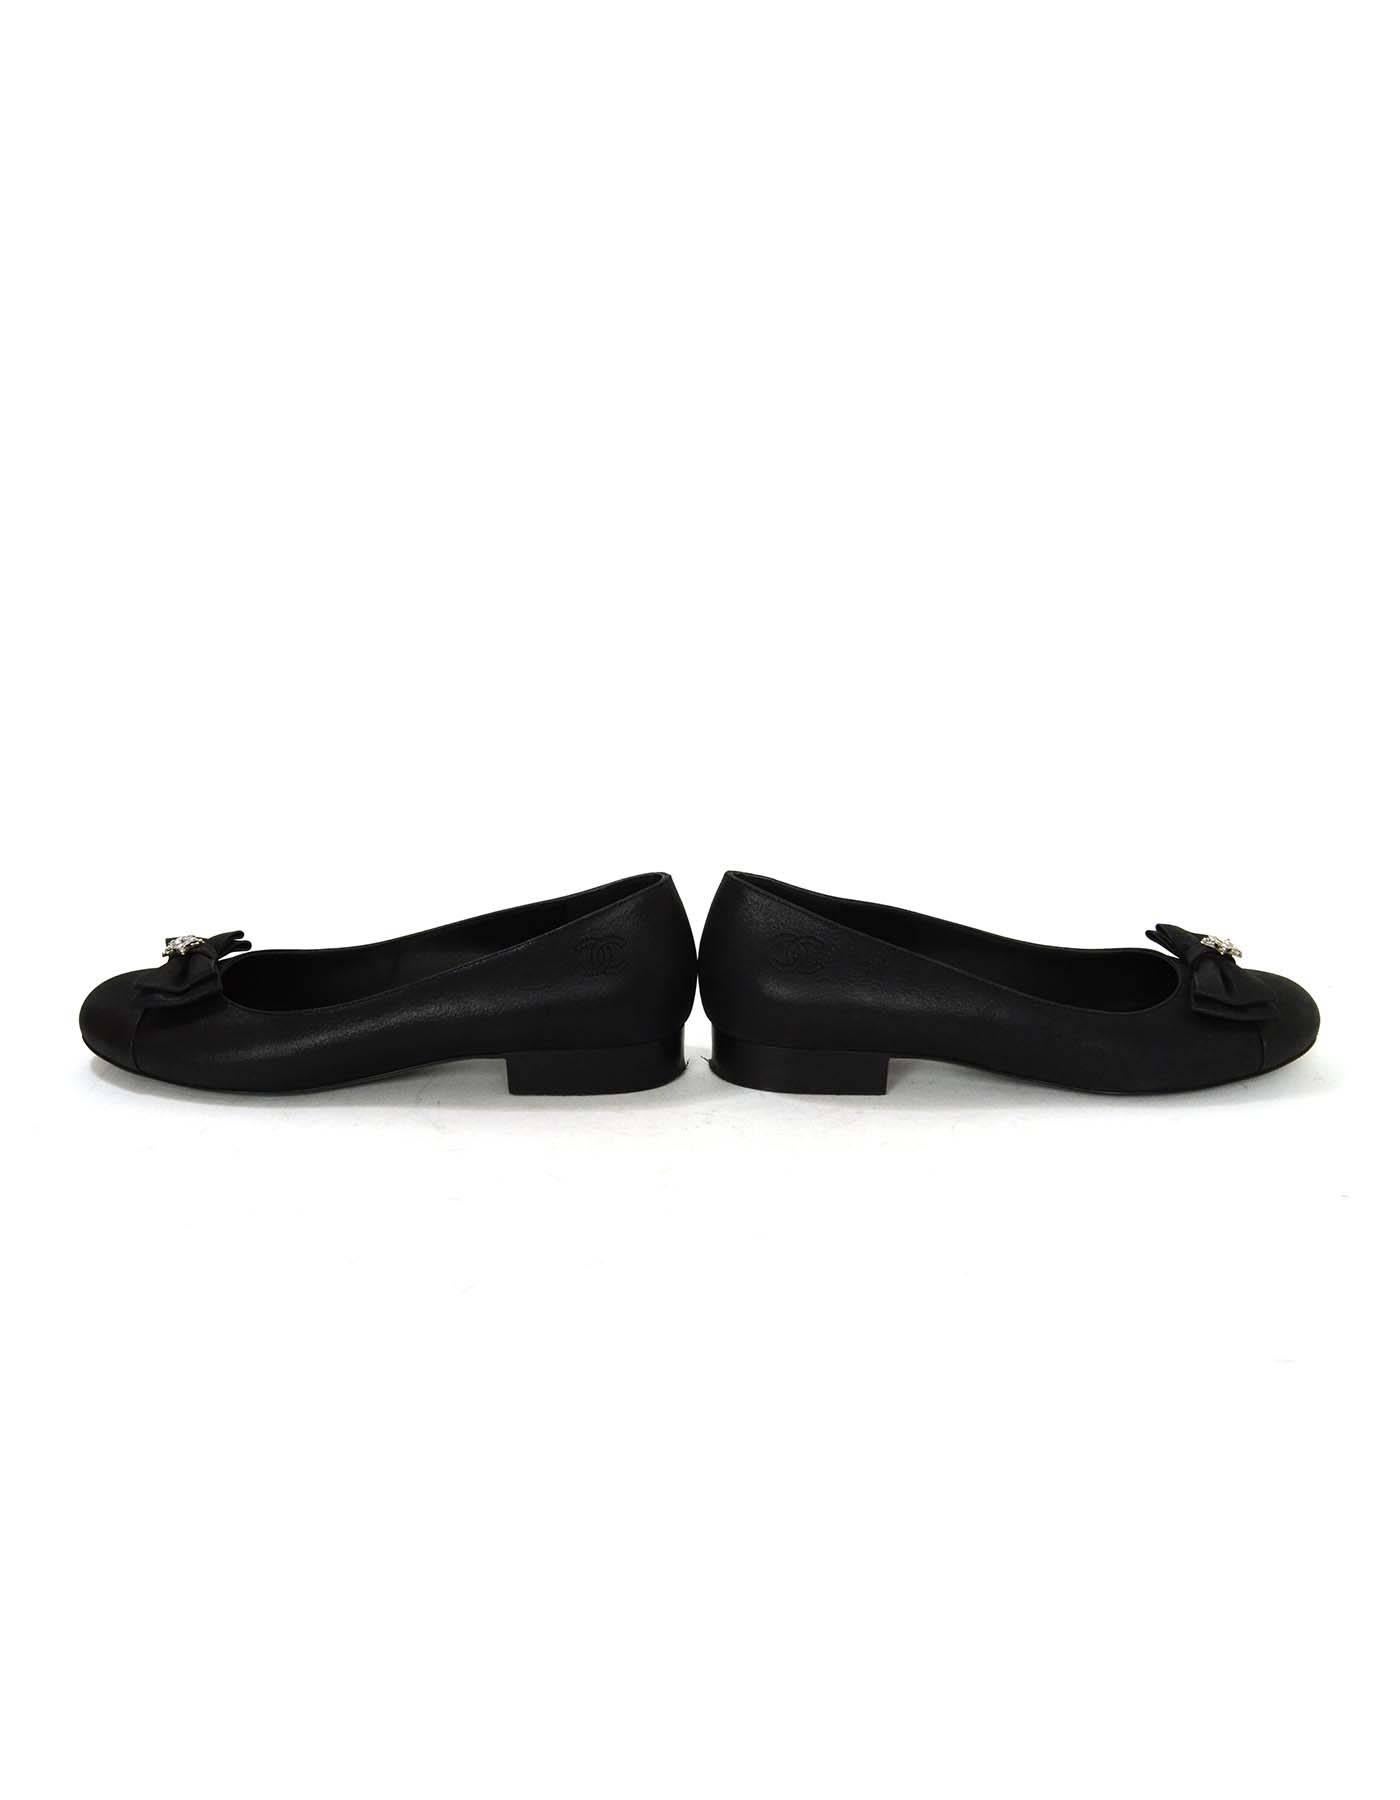 Chanel Black Iridescent Calfskin Flats sz 38 2